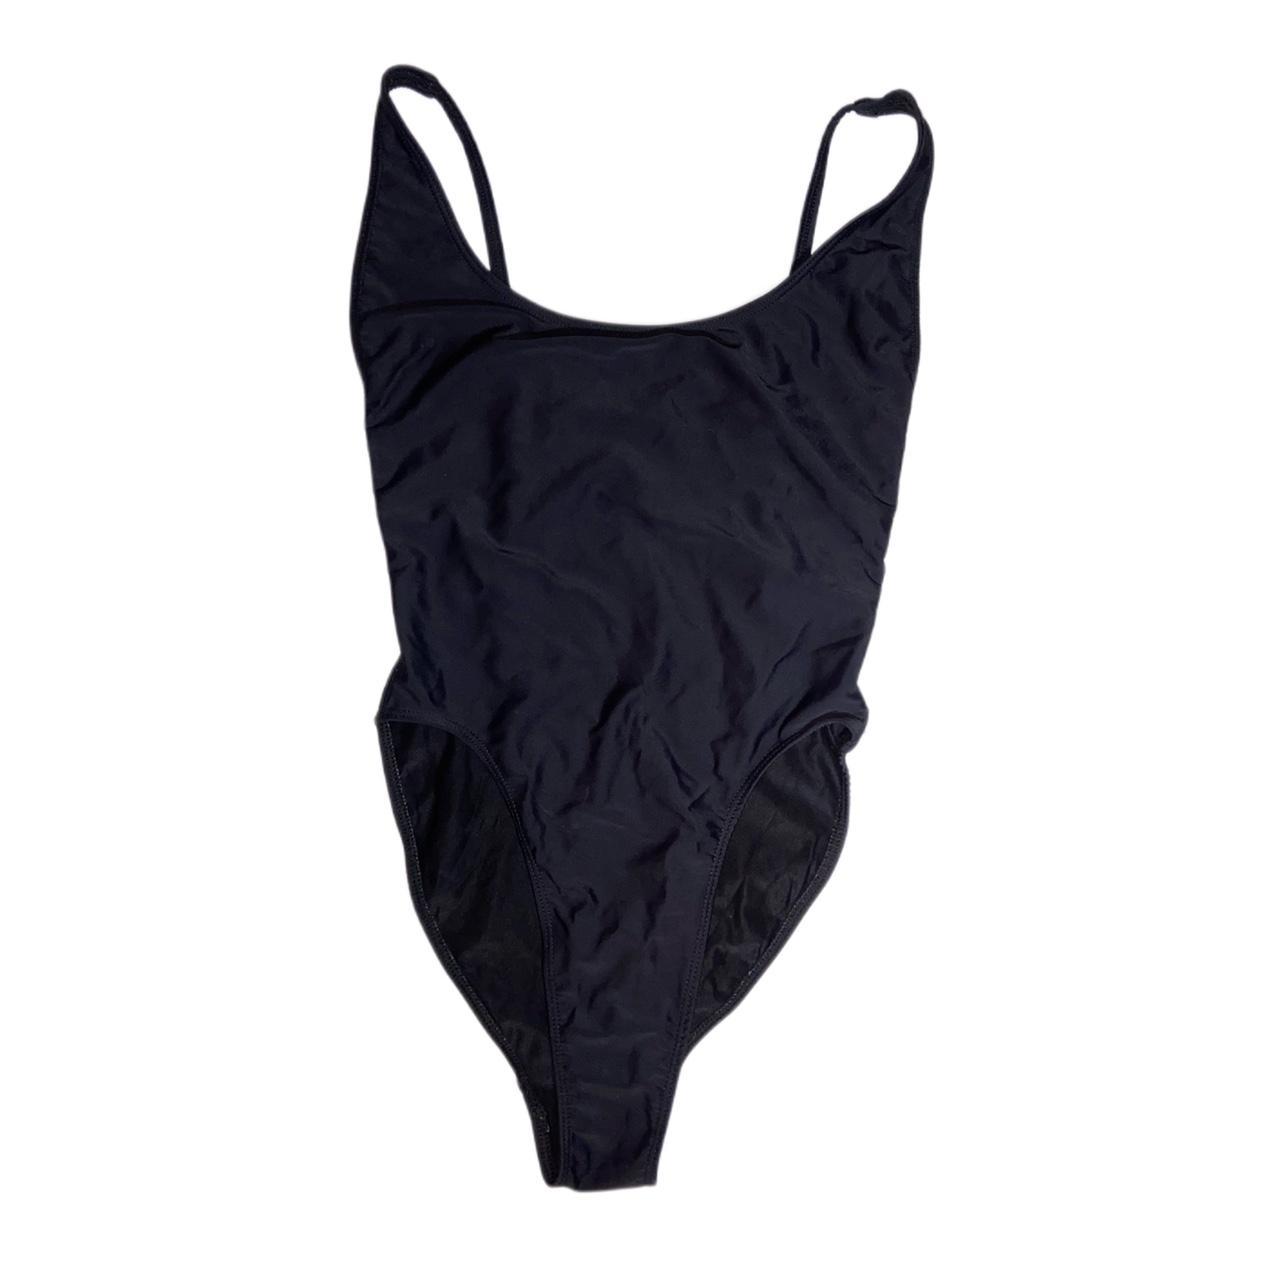 American Apparel Women's Black Swimsuit-one-piece | Depop